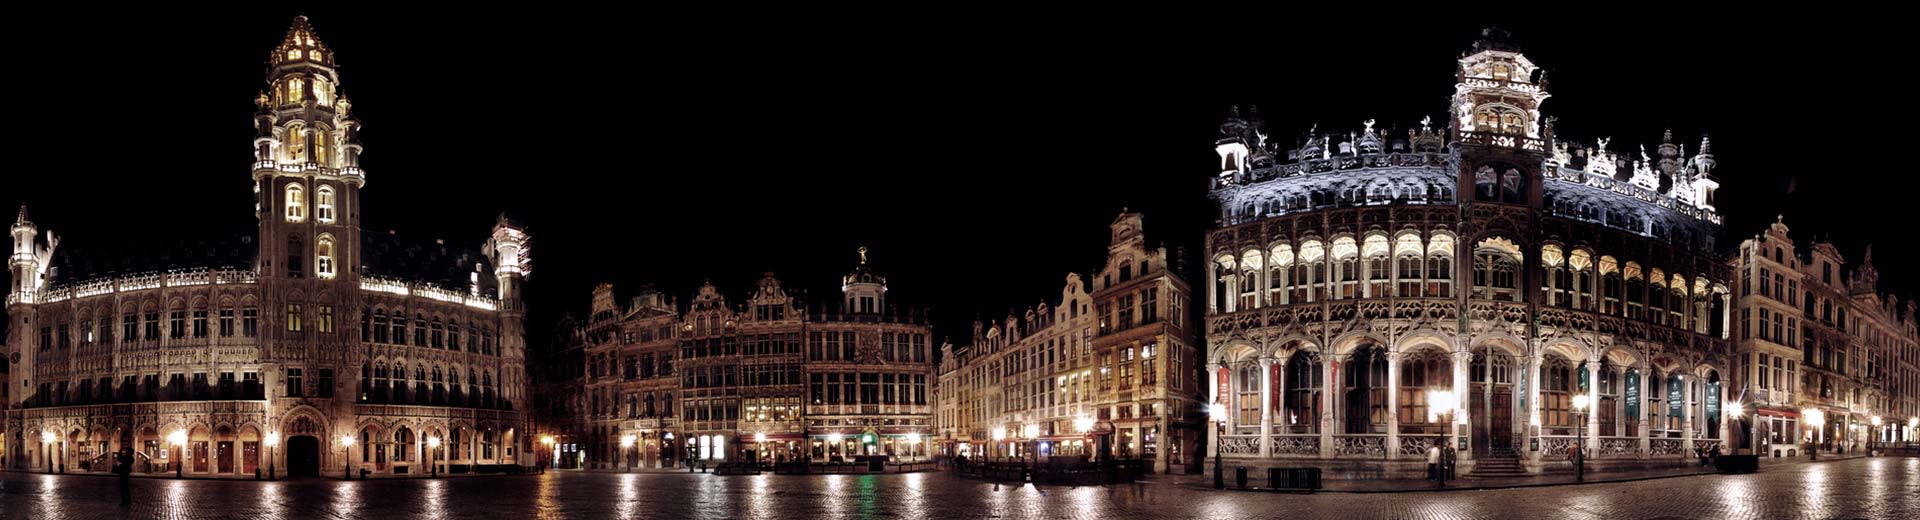 夜幕下的布鲁塞尔市中心，市政厅尽收眼底。